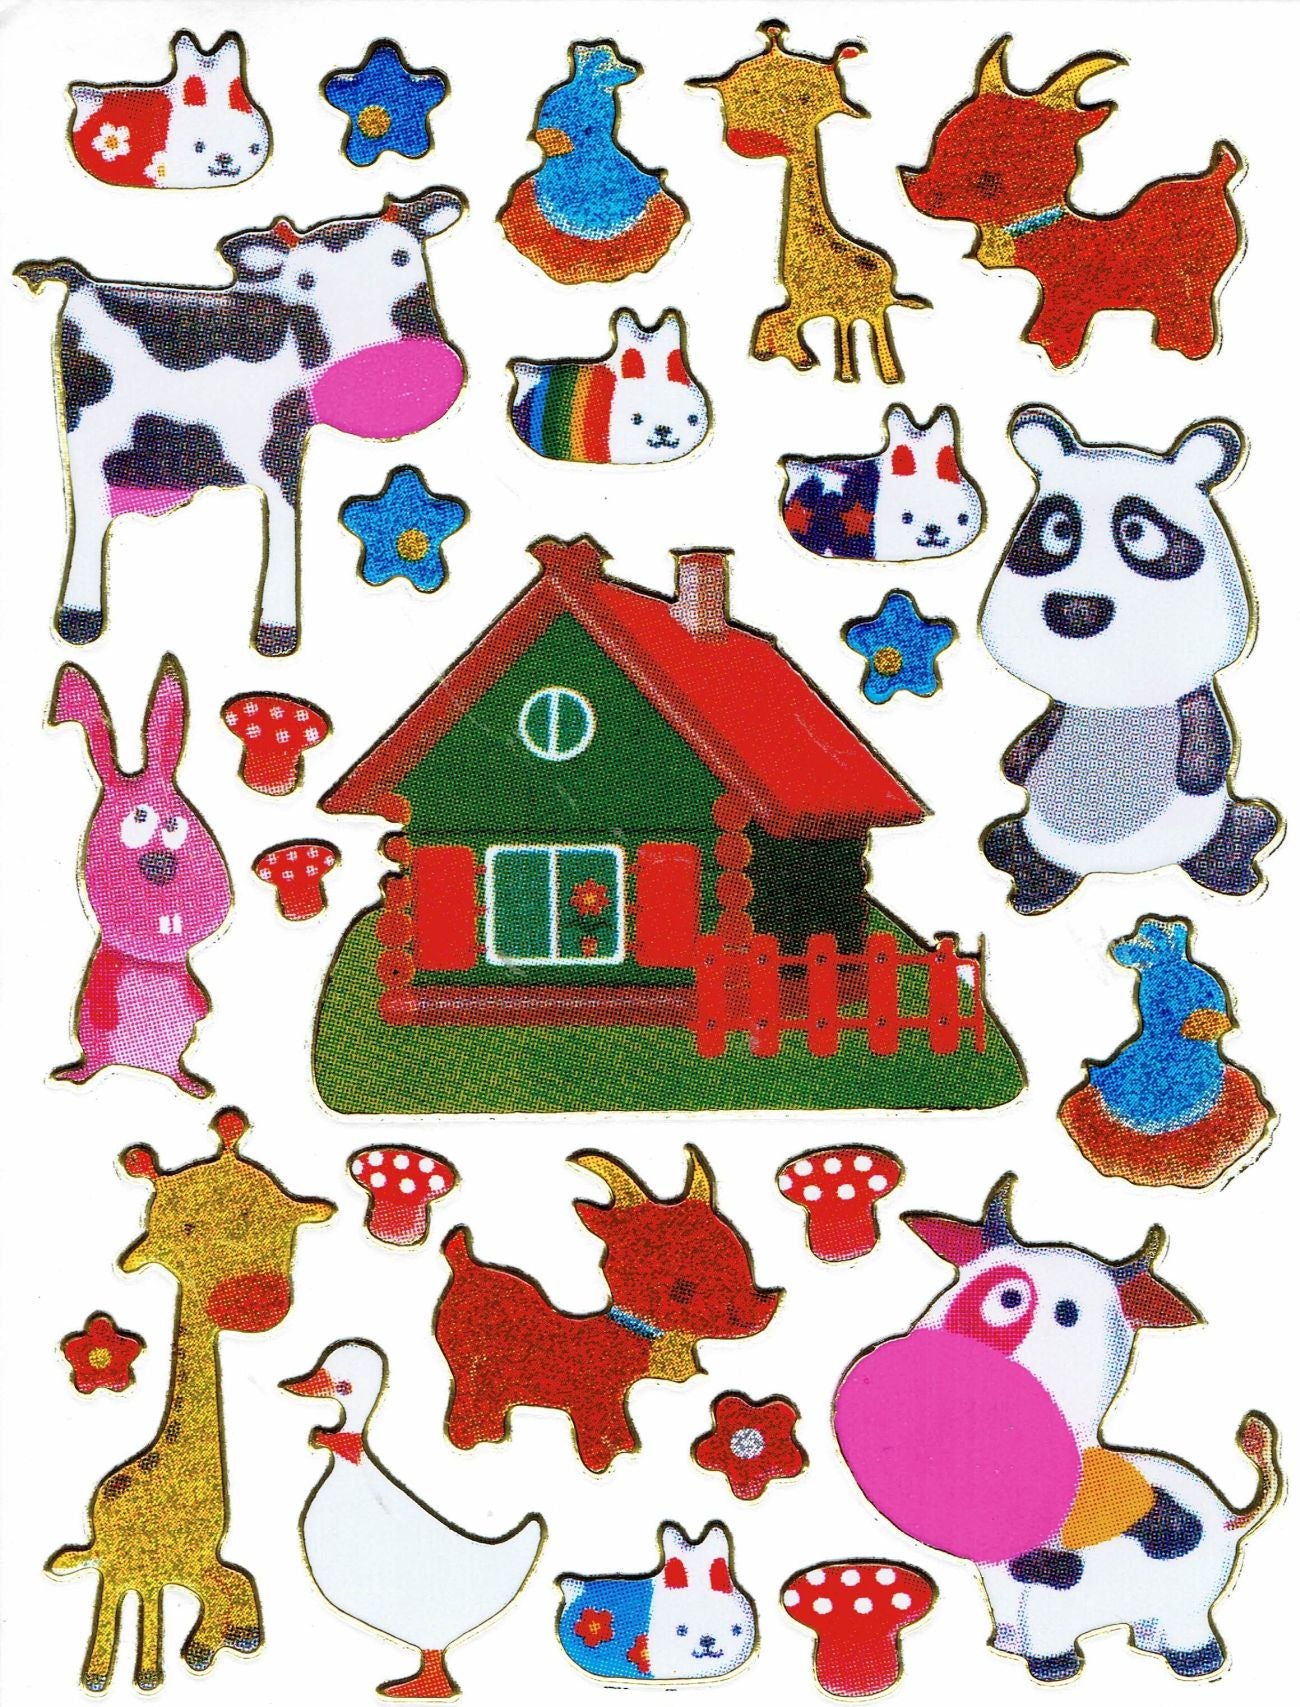 Ziege Hase Kuh Farm bunt Tiere Aufkleber Sticker metallic Glitzer Effekt Kinder Basteln Kindergarten 1 Bogen 190